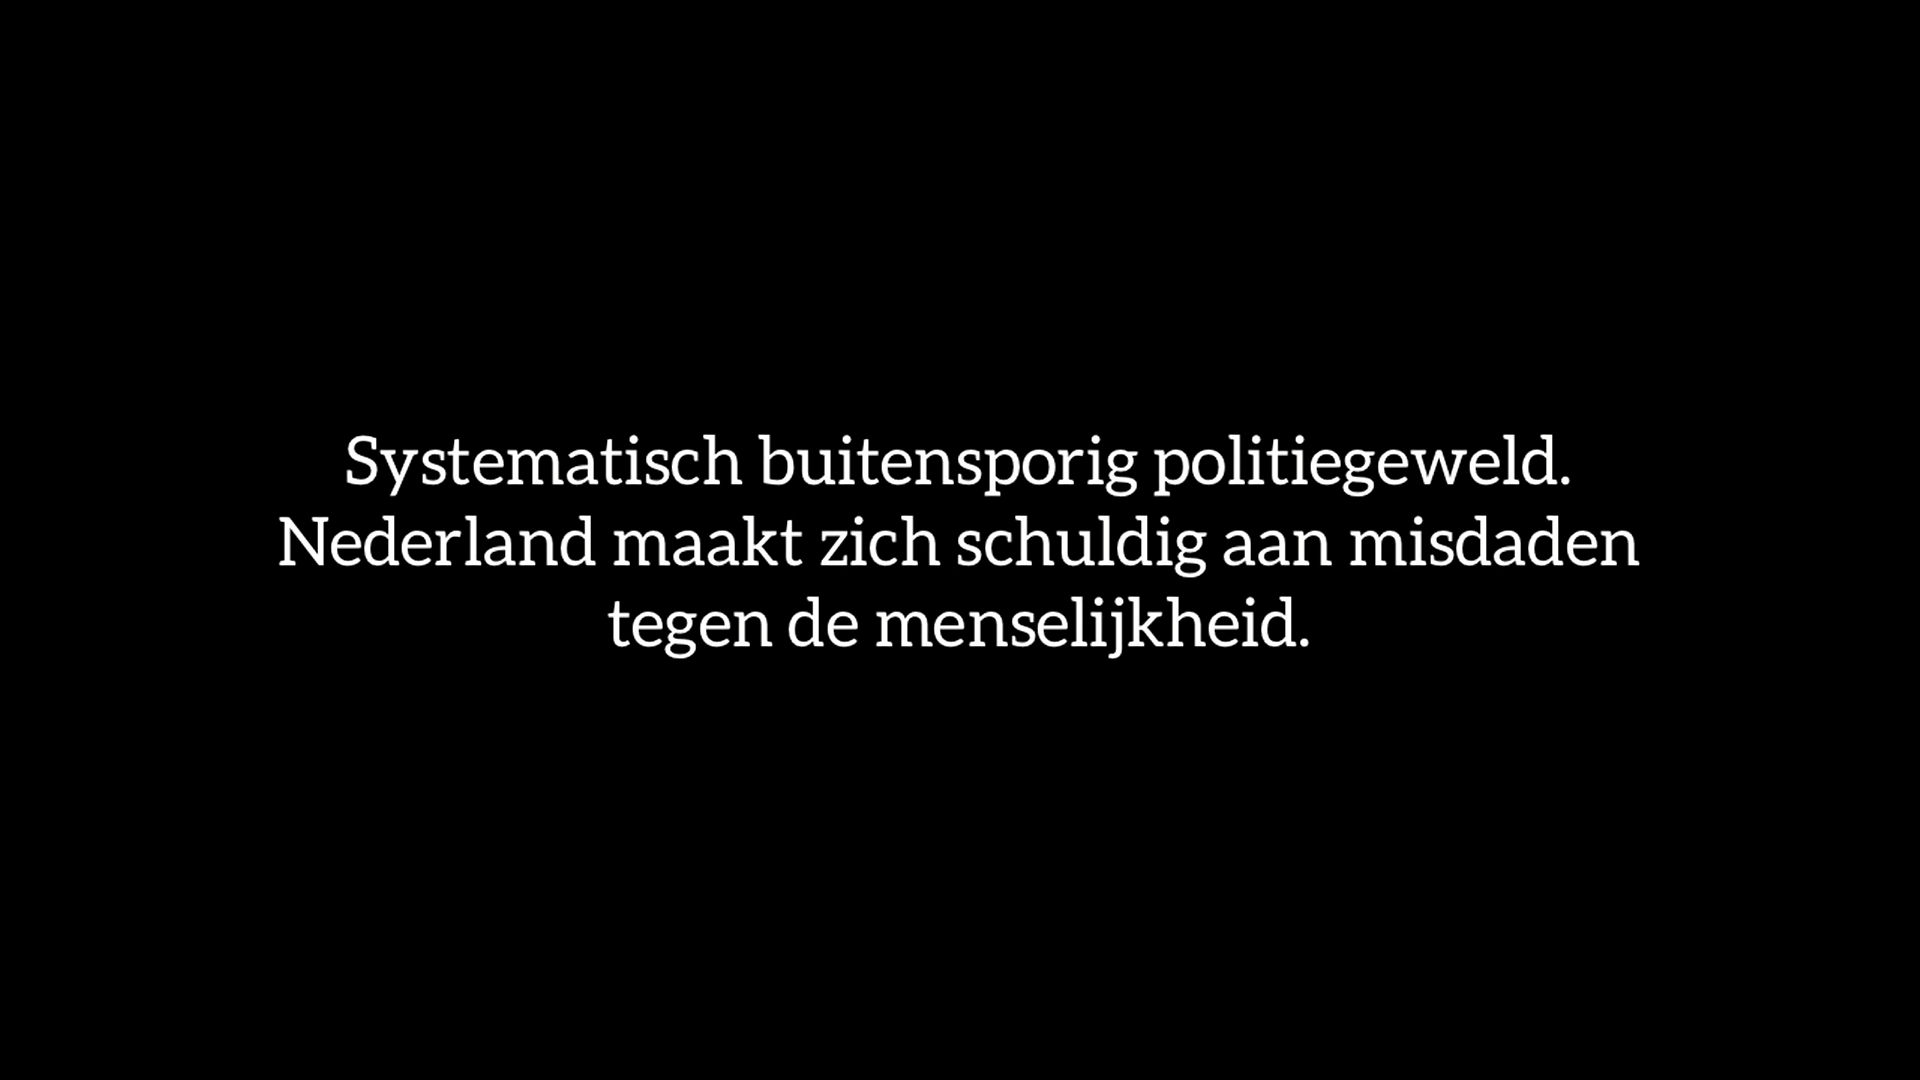 videowaarheid.nl